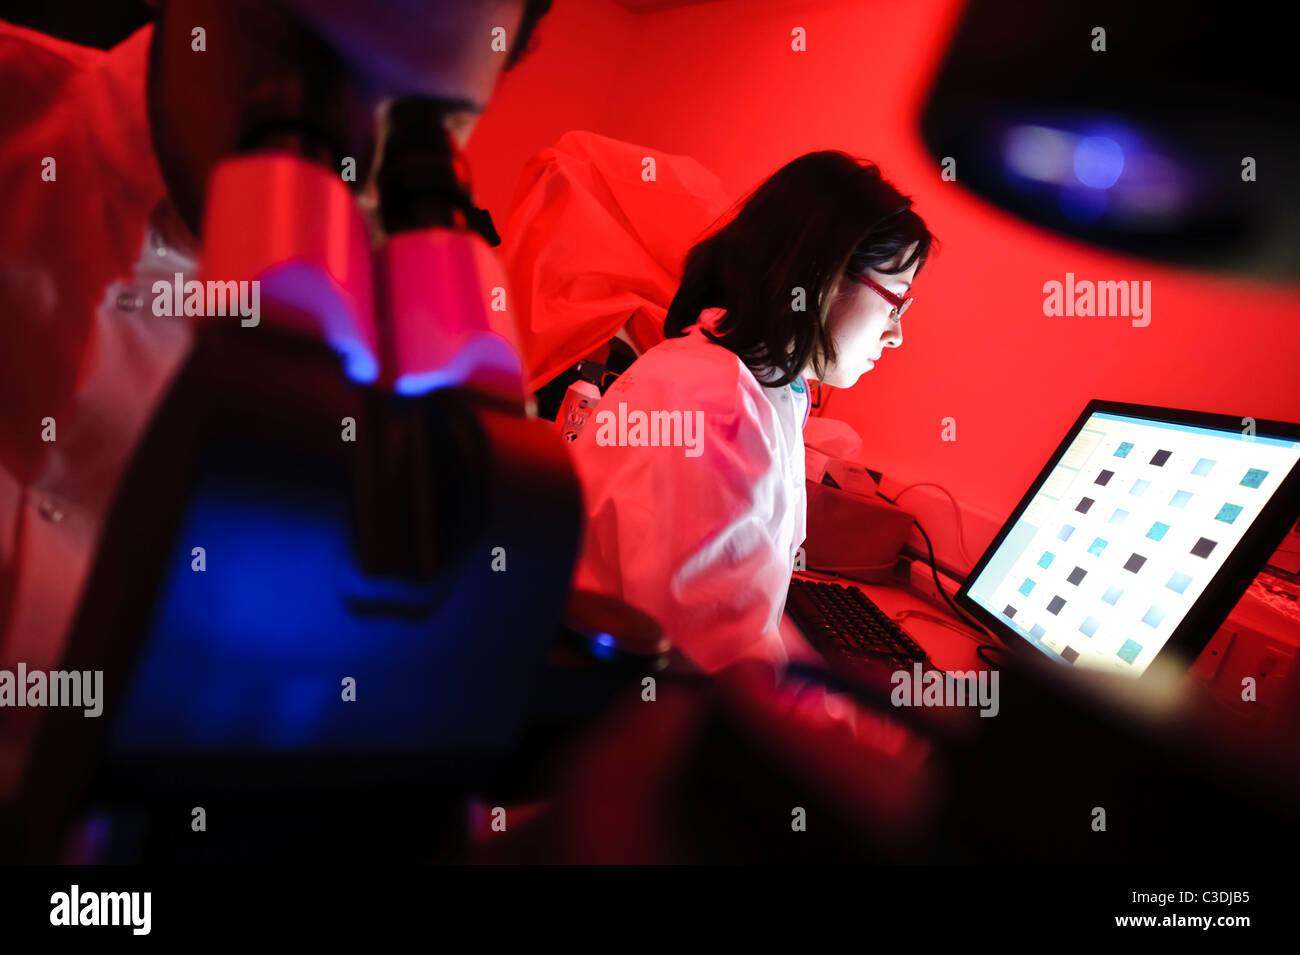 männliche und weibliche Wissenschaftler in Wissenschaft Dunkelkammer mit roter Beleuchtung nach unten Mikroskop mit Bildschirm im Hintergrund Stockfoto